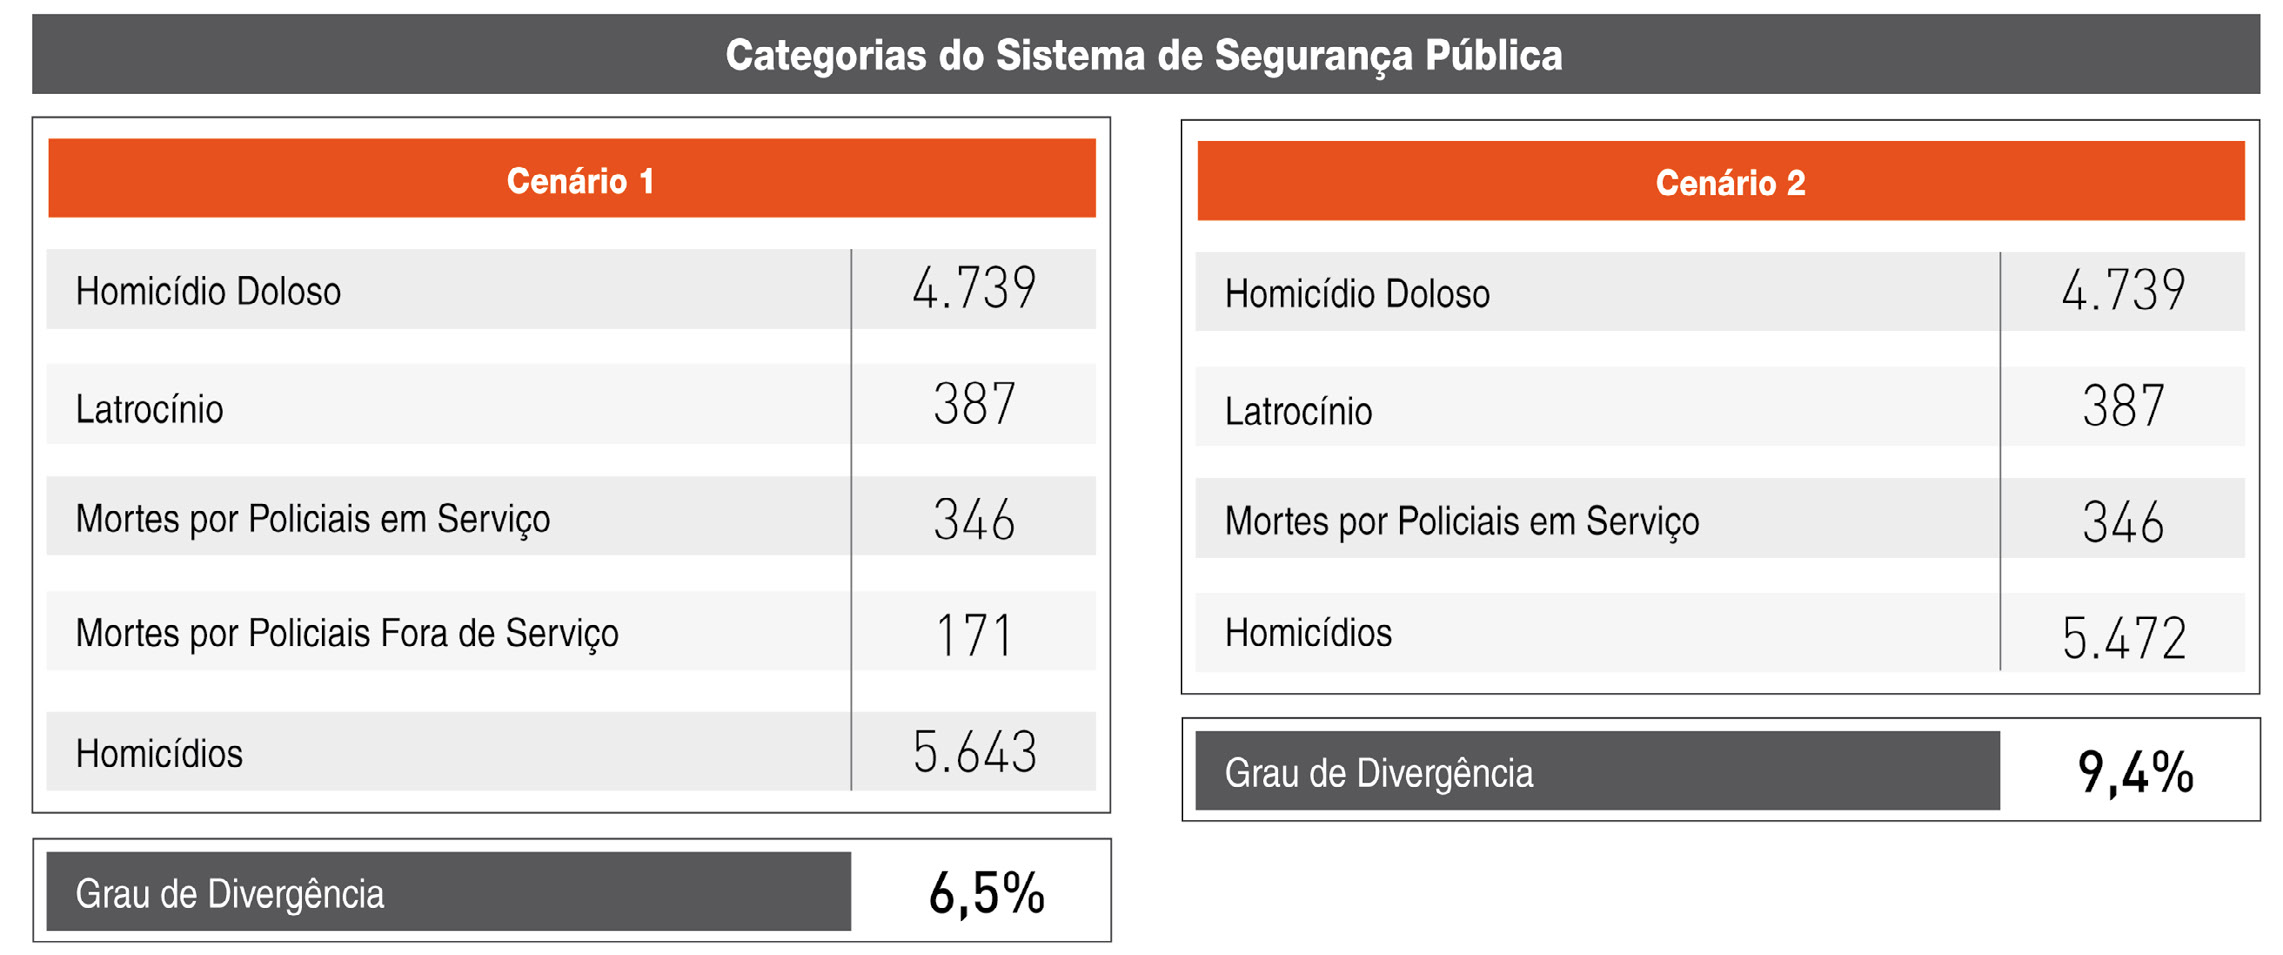 II. Protocolo de Bogotá: Diagnóstico Geral dos Dados sobre Homicídio Tabela 3 Homicídios, Definição do Protocolo de Bogotá (Dados da Segurança) Mecanismos para verificação e validação de dados O que